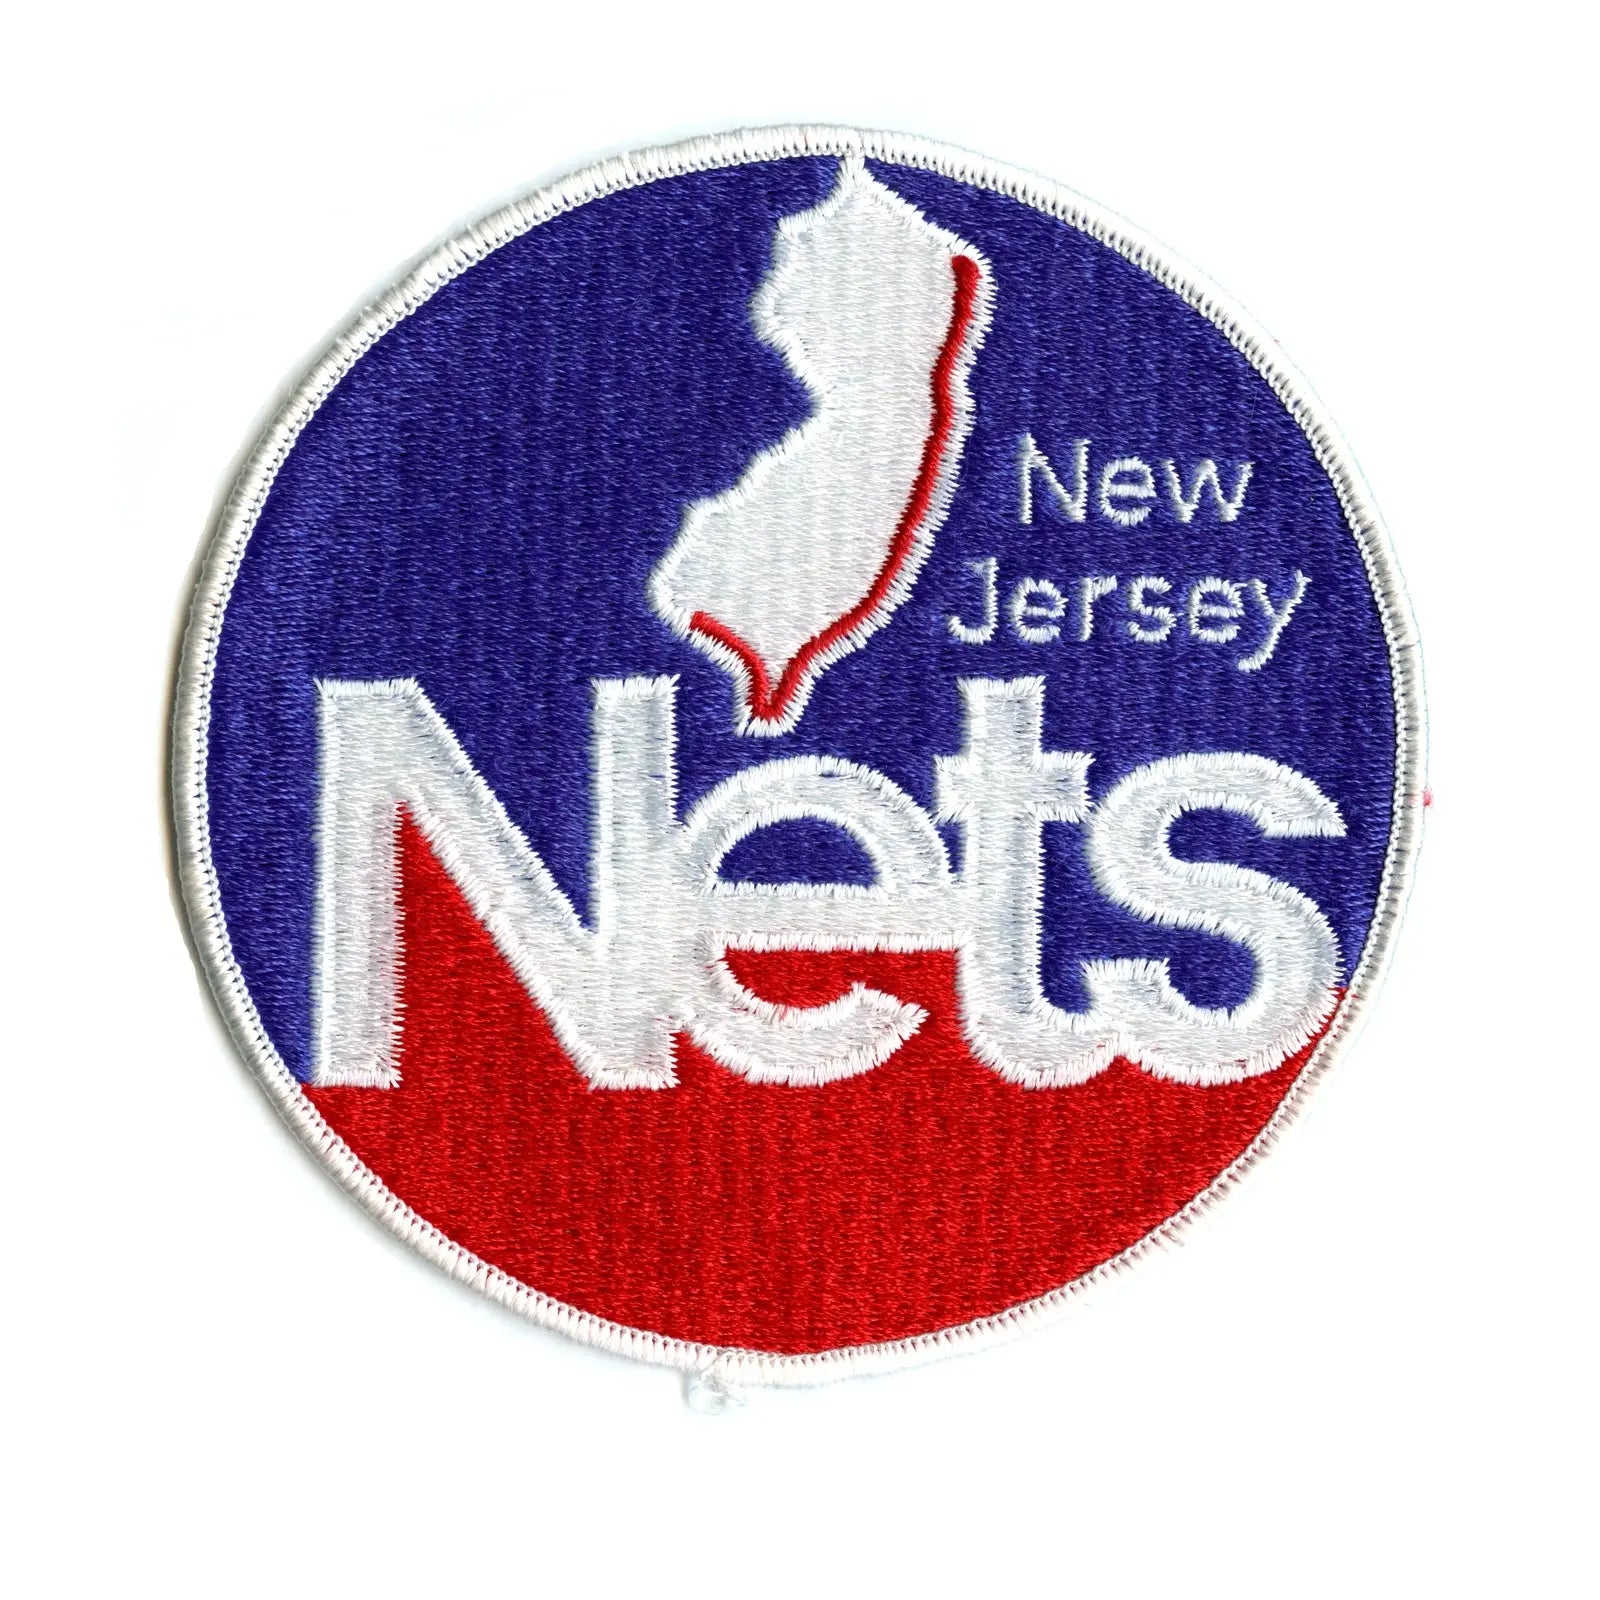 nets vintage jersey